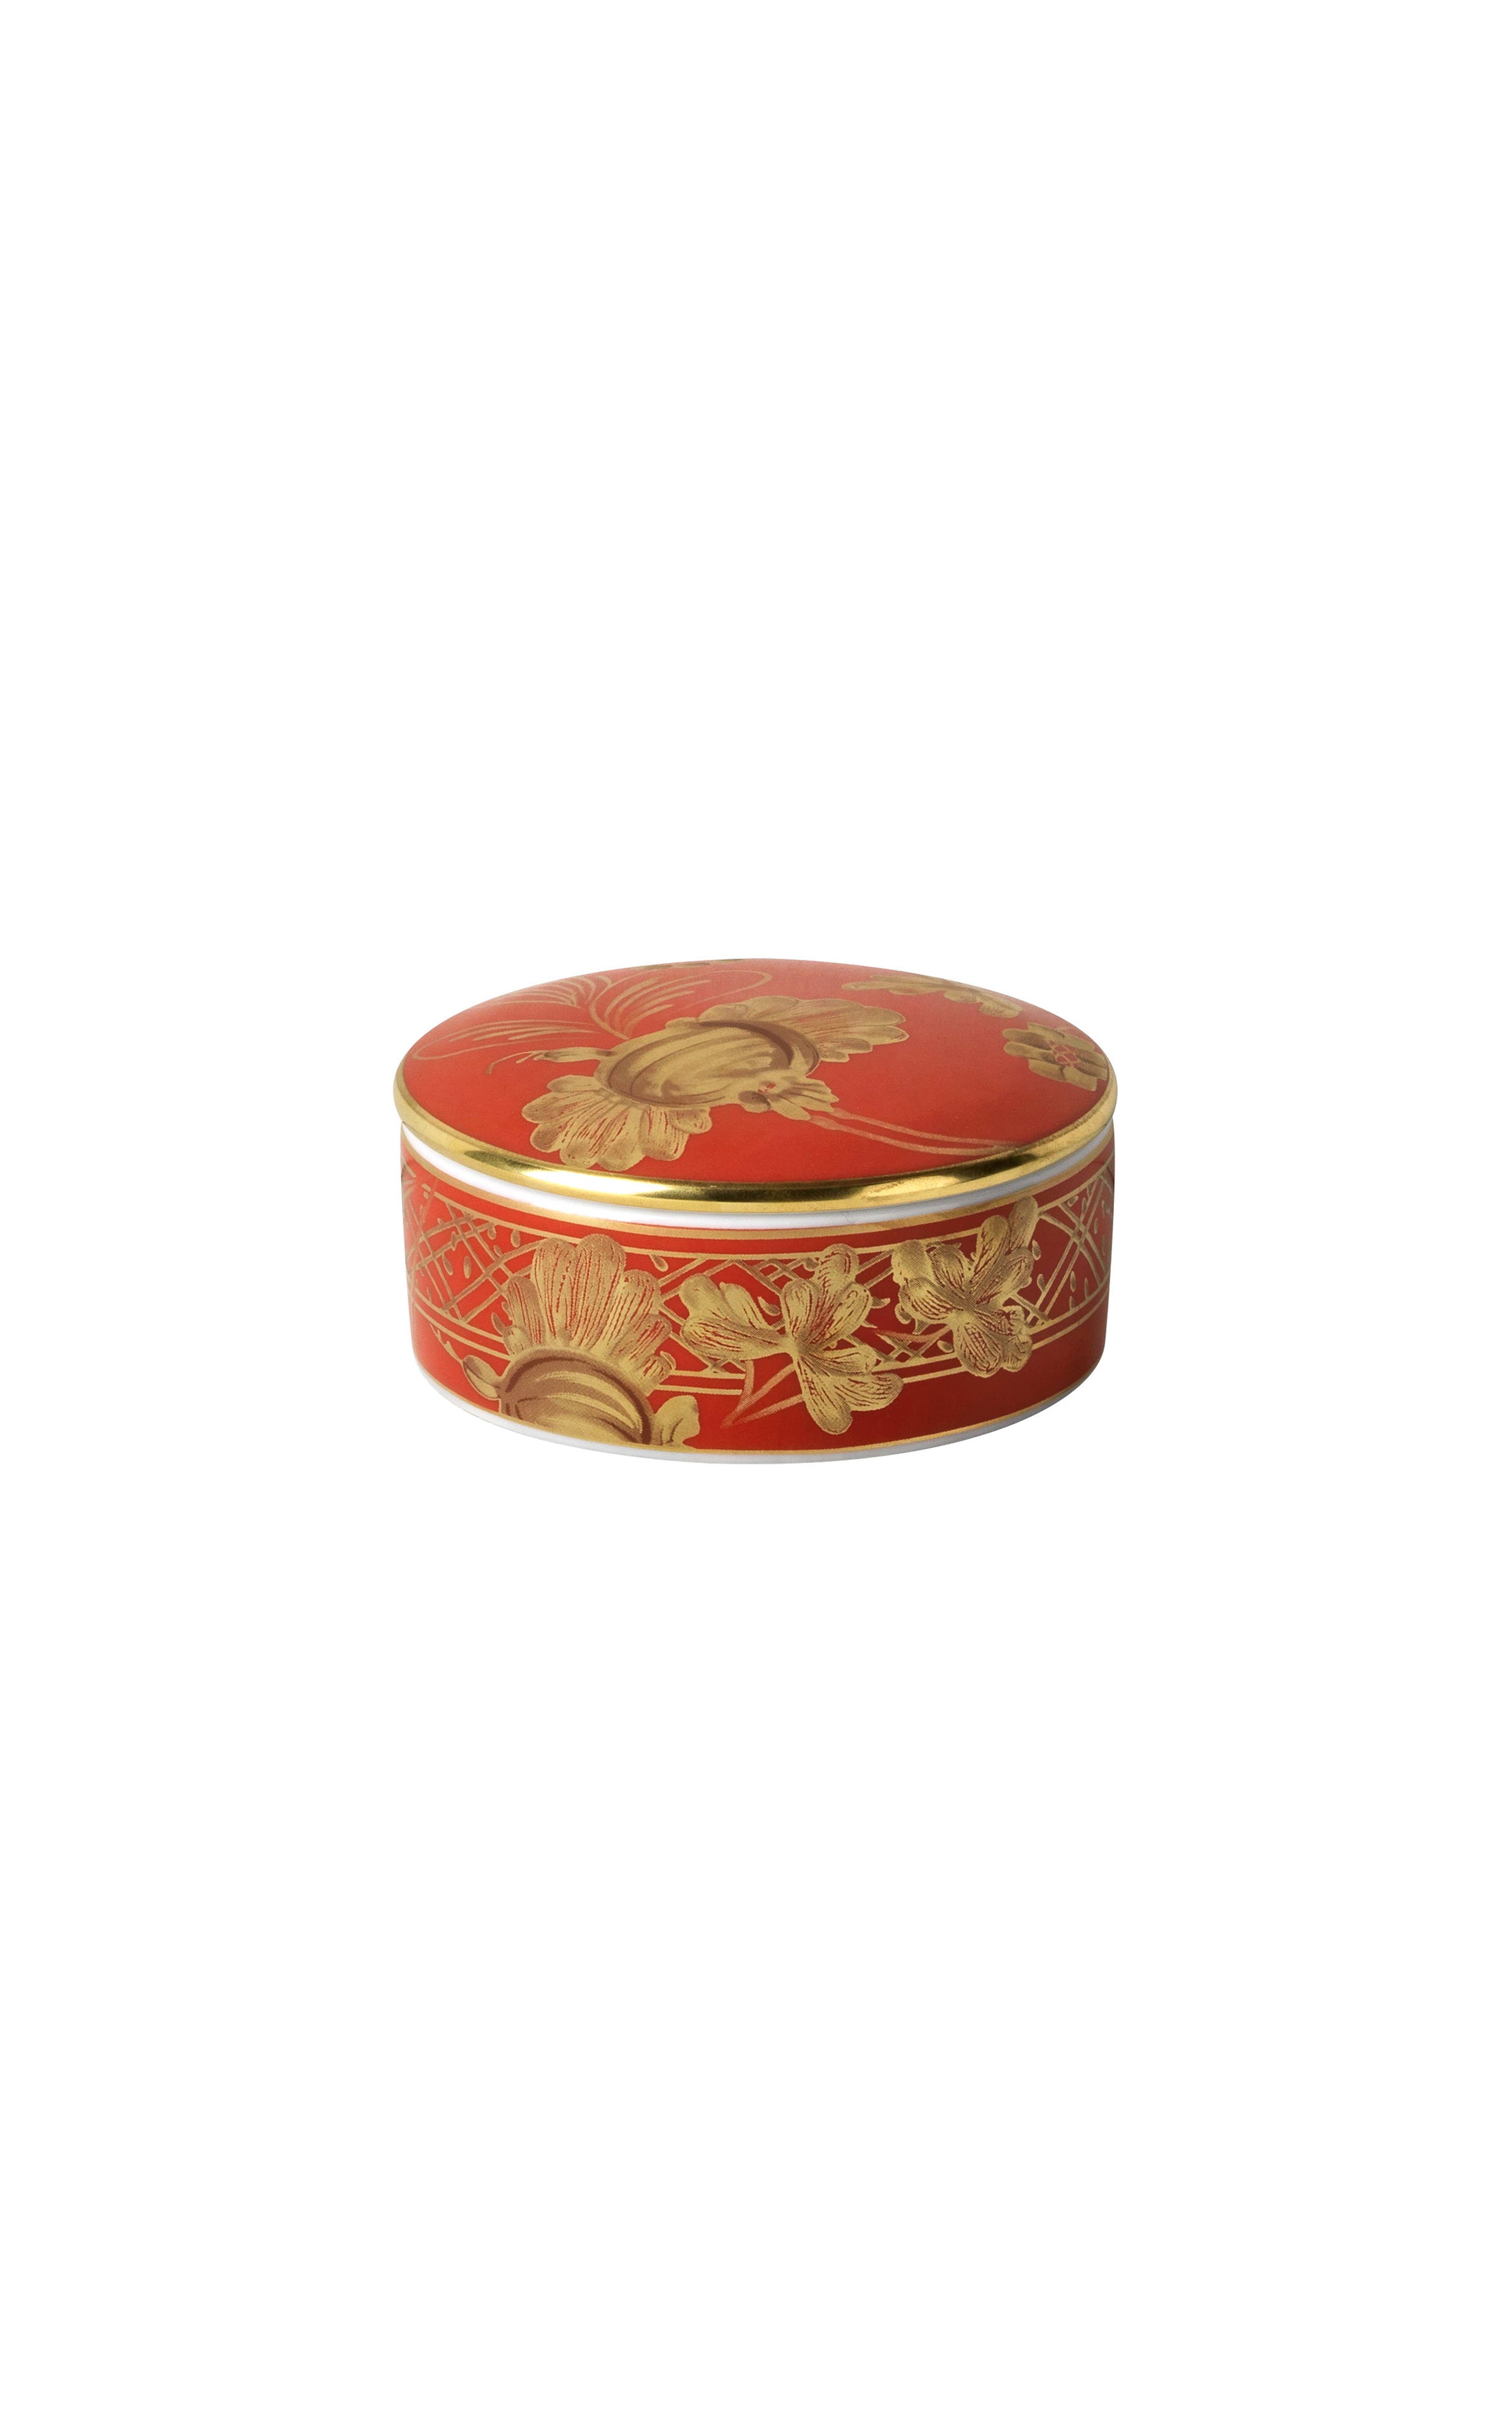 Oriente Italiano Small Round Box with lid